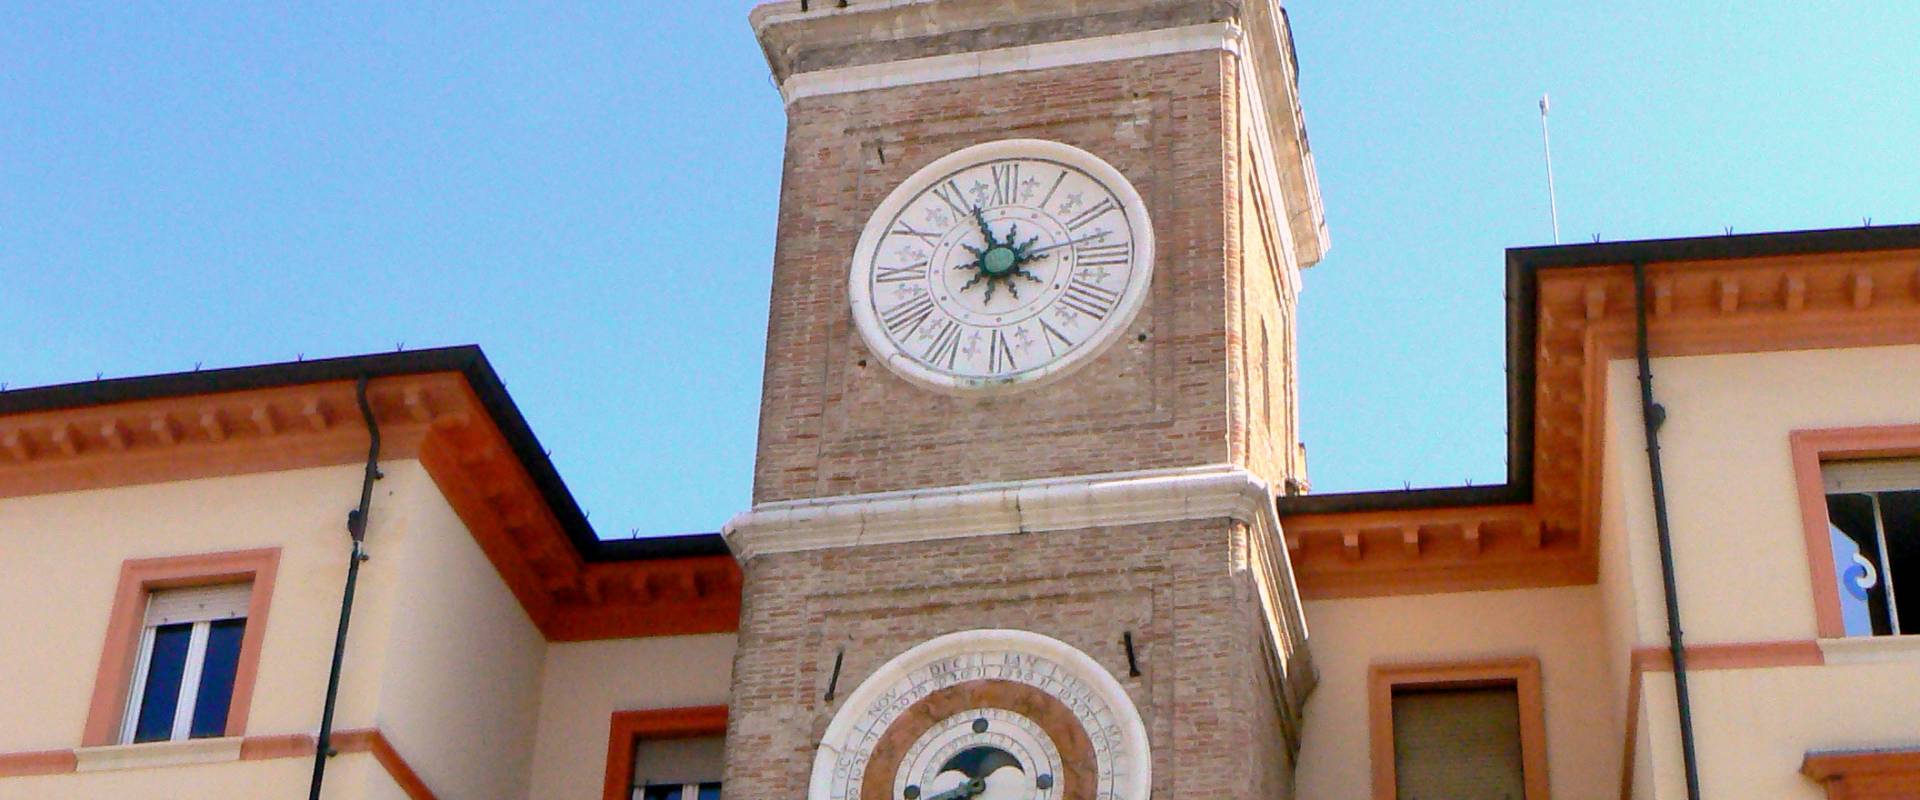 Torre orologio Rimini foto di Paperoastro